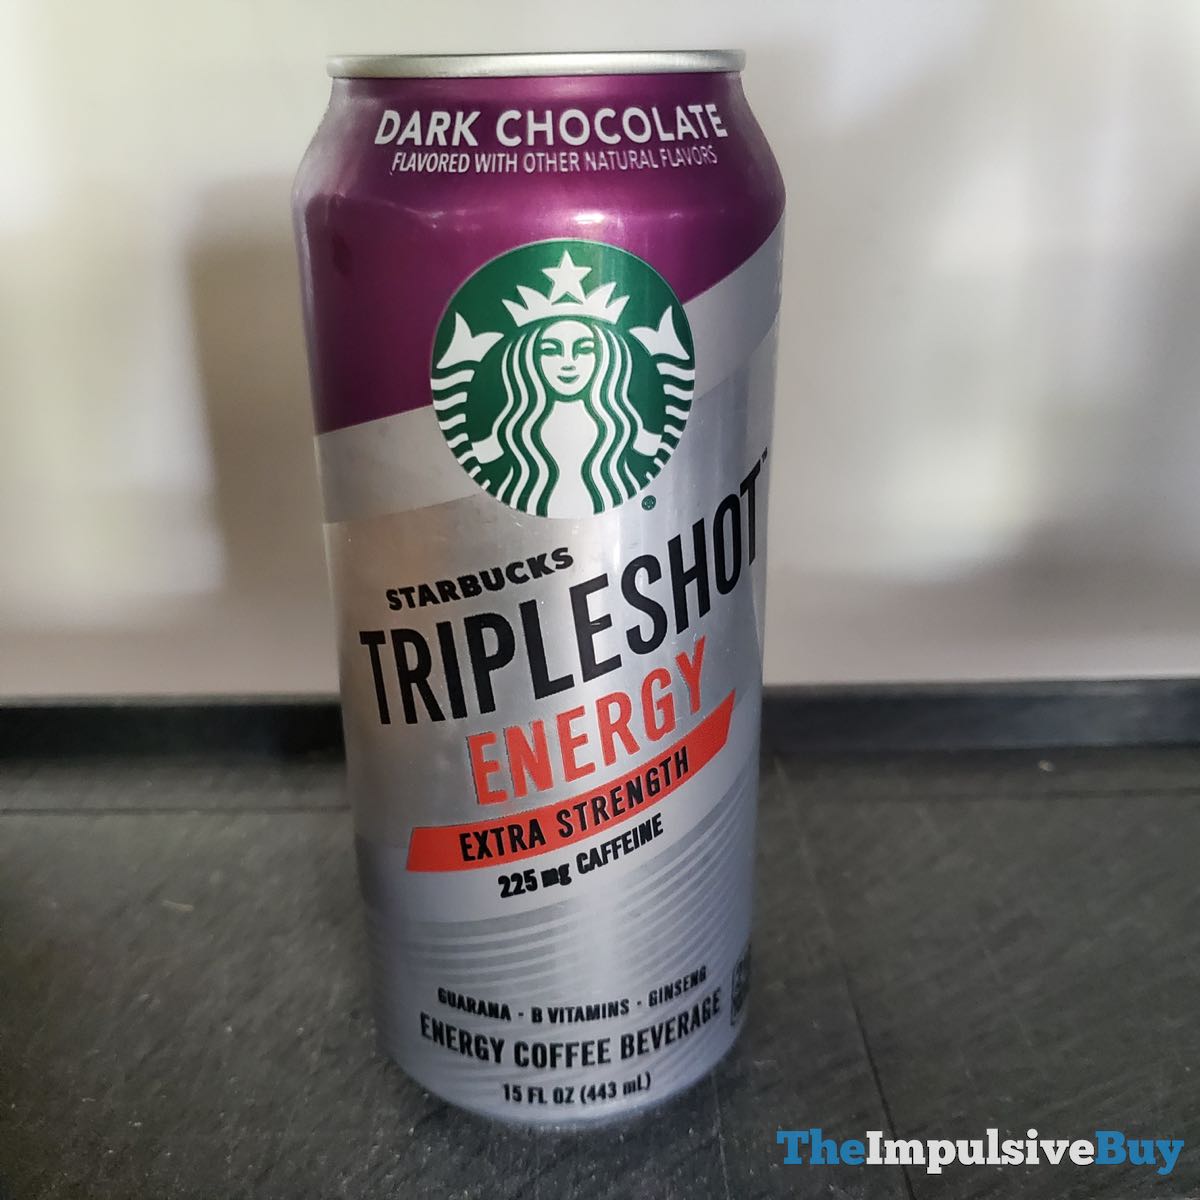 SPOTTED: Starbucks Tripleshot Energy Dark Chocolate - The Impulsive Buy